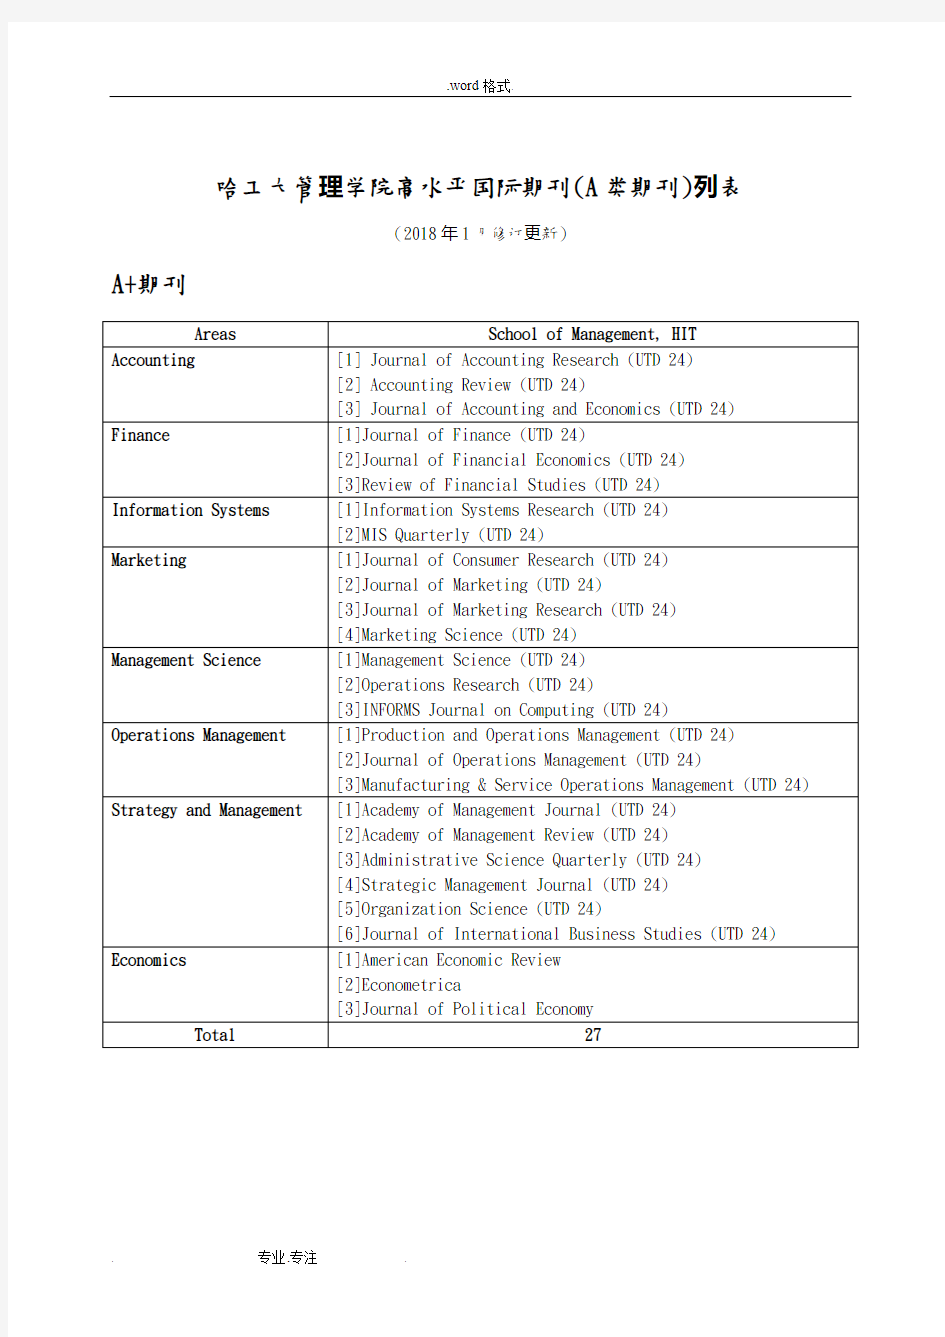 哈工大管理学的院高水平国际期刊A类期刊列表